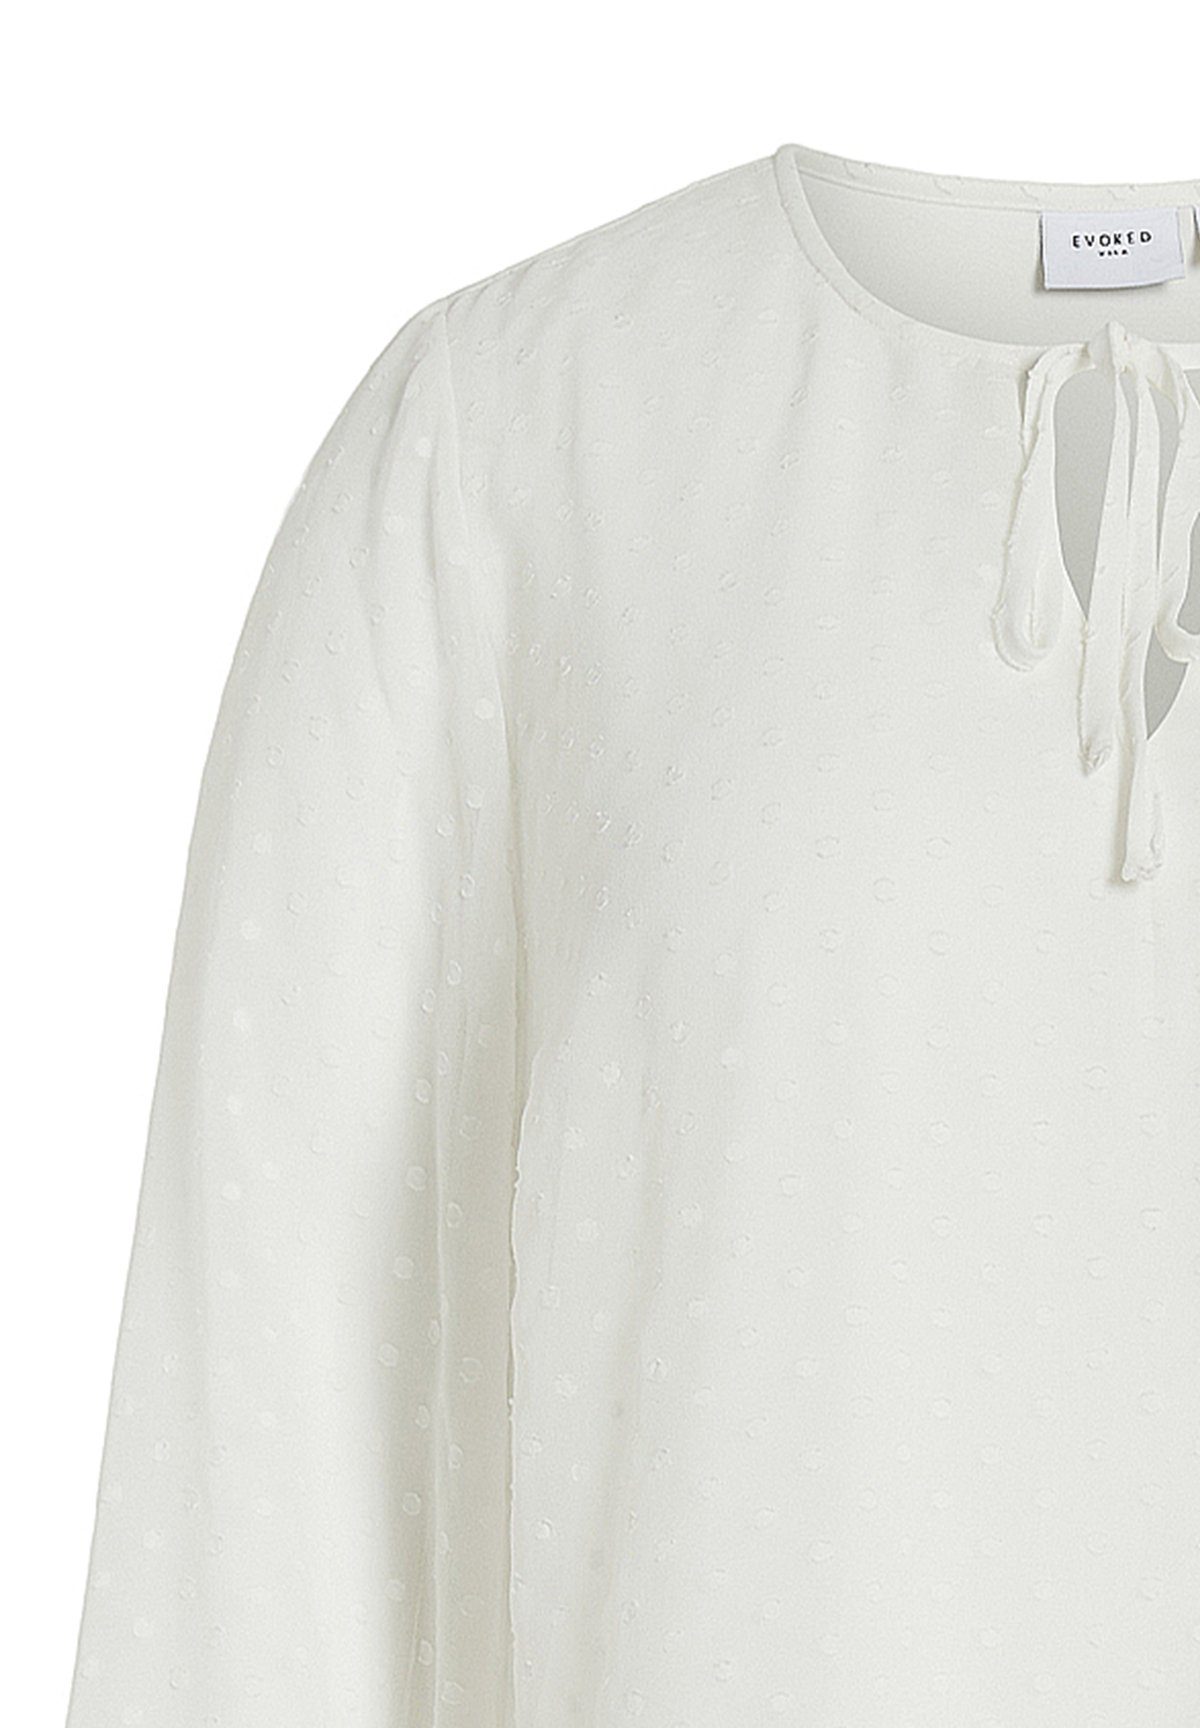 Top Ballonärmeln Design mit Blusenshirt Weiß Size 6816 Vila Plus Shirt in Blusen